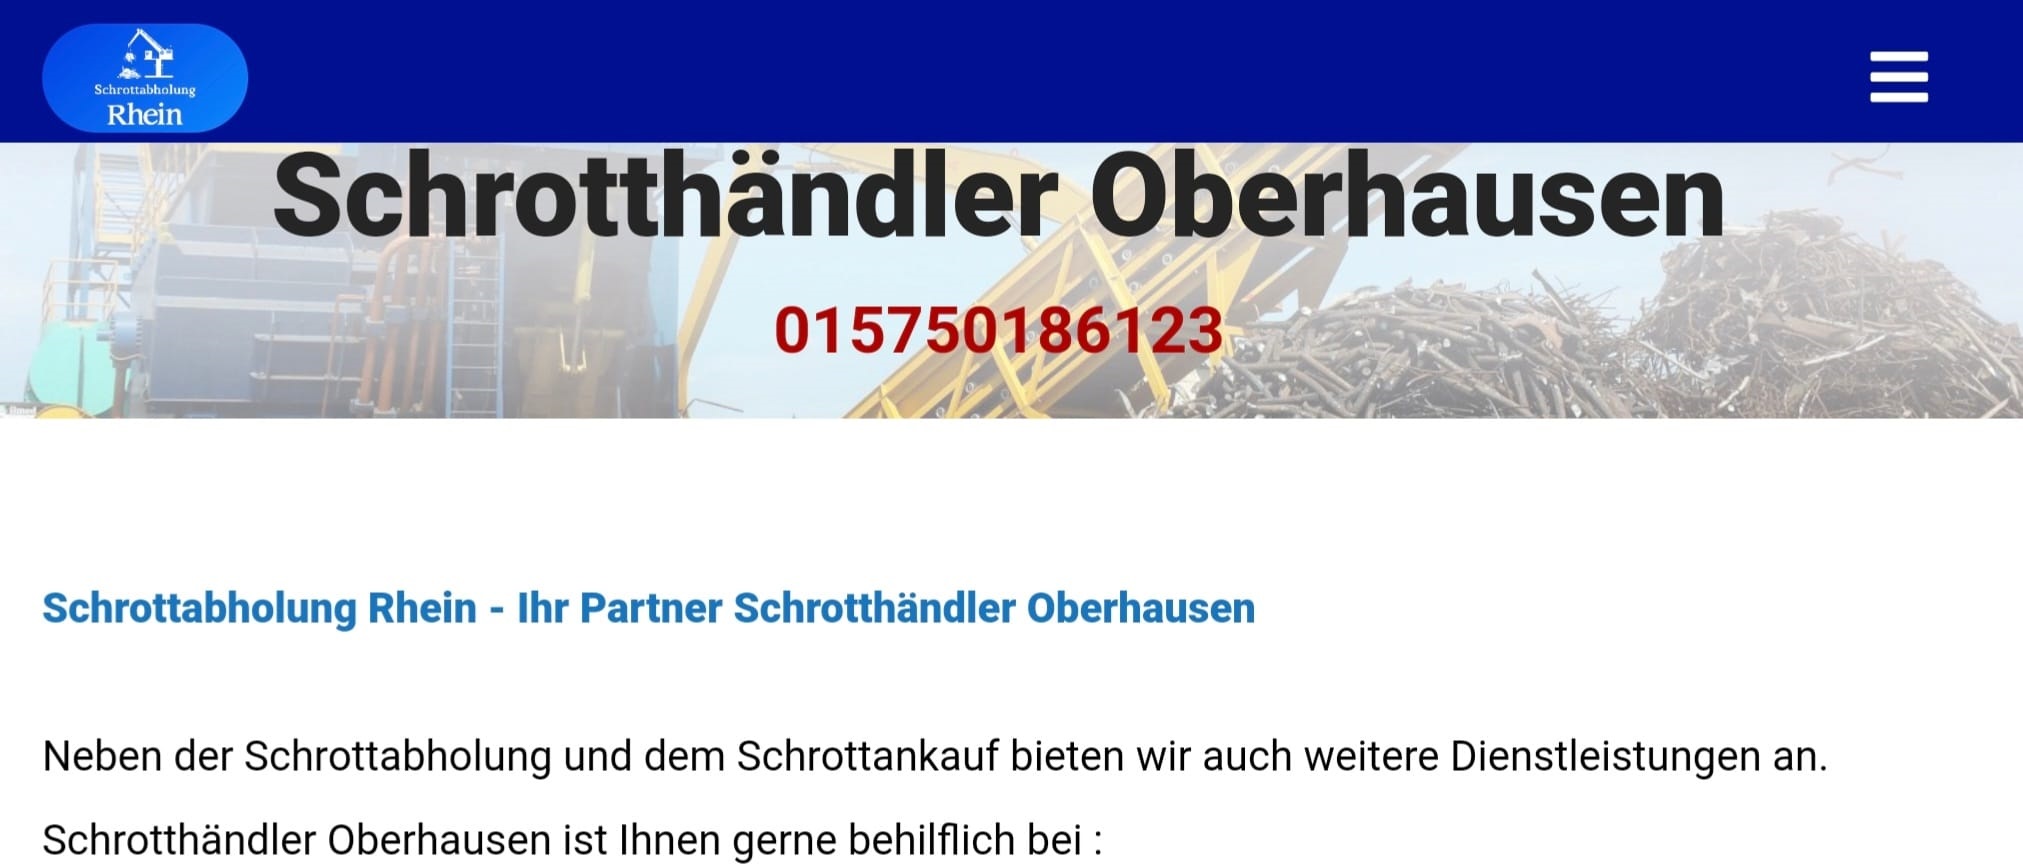 Schrotthaendler Oberhausen f39e189f - Schrotthändler Oberhausen! Kümmert sich um Ihren Schrott in Oberhausen